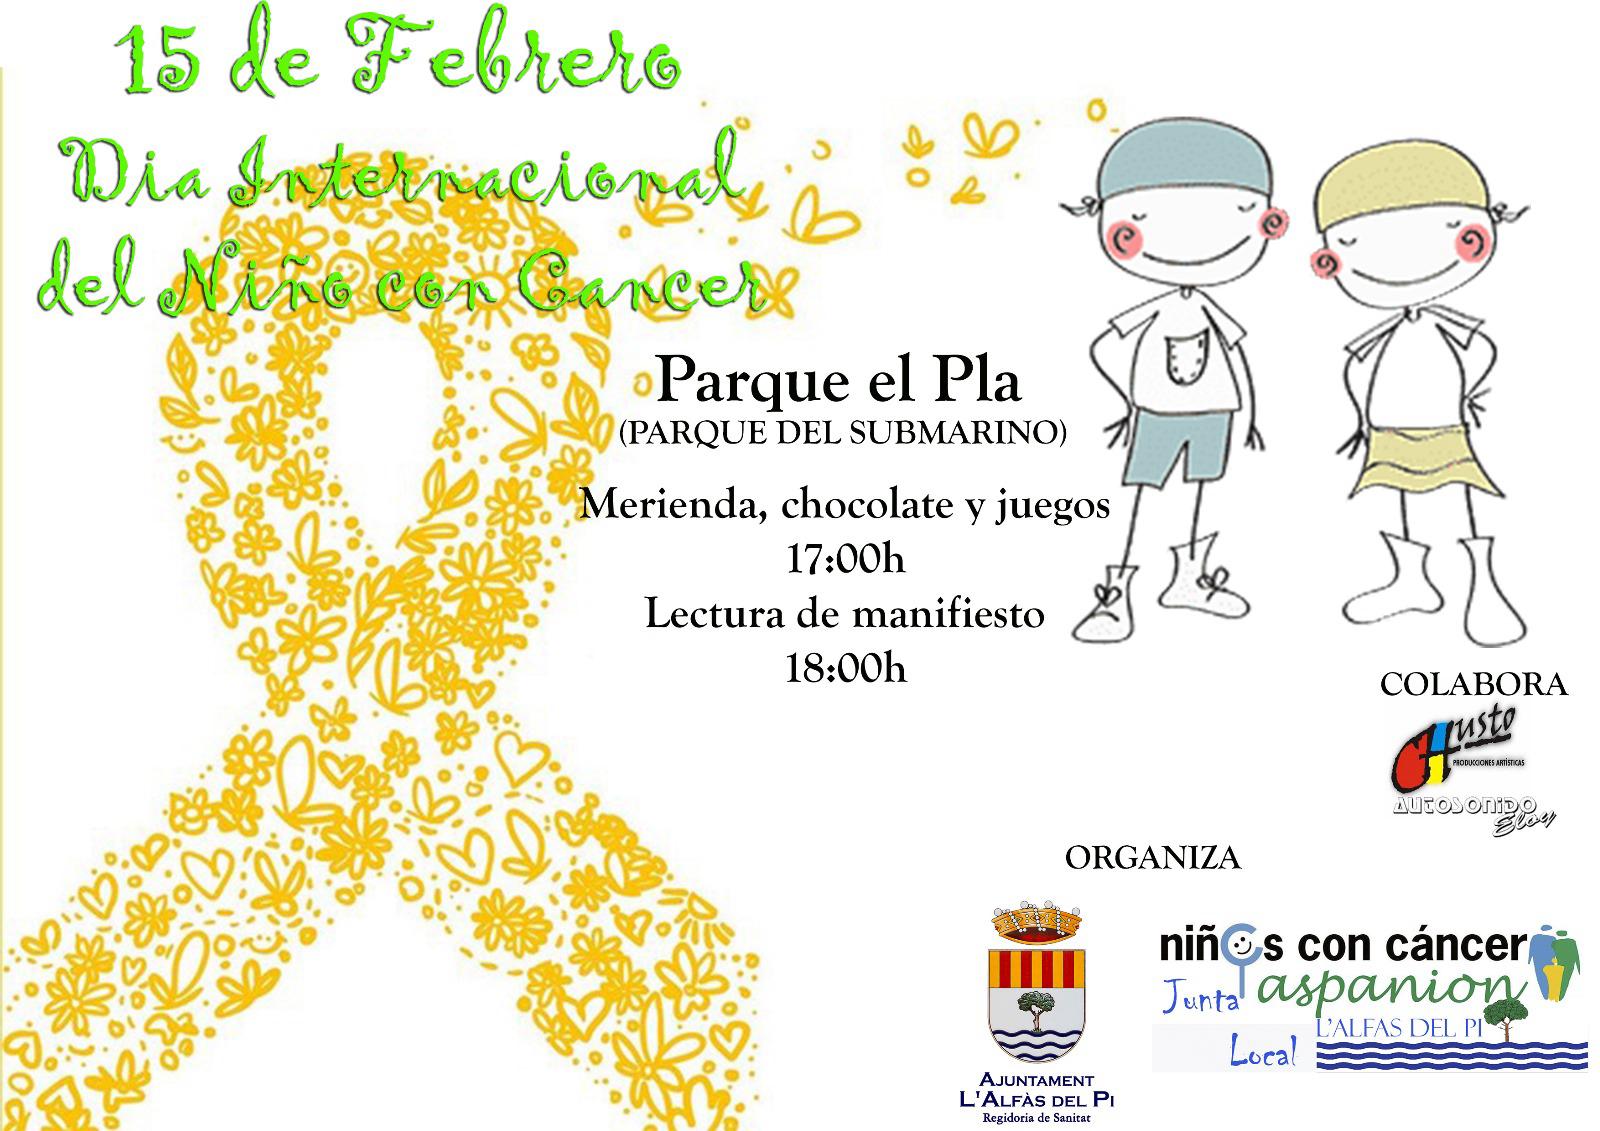 Este jueves, tarde gratuita de juegos y merienda en el Parque El Pla por el Día Internacional del Cáncer Infantil